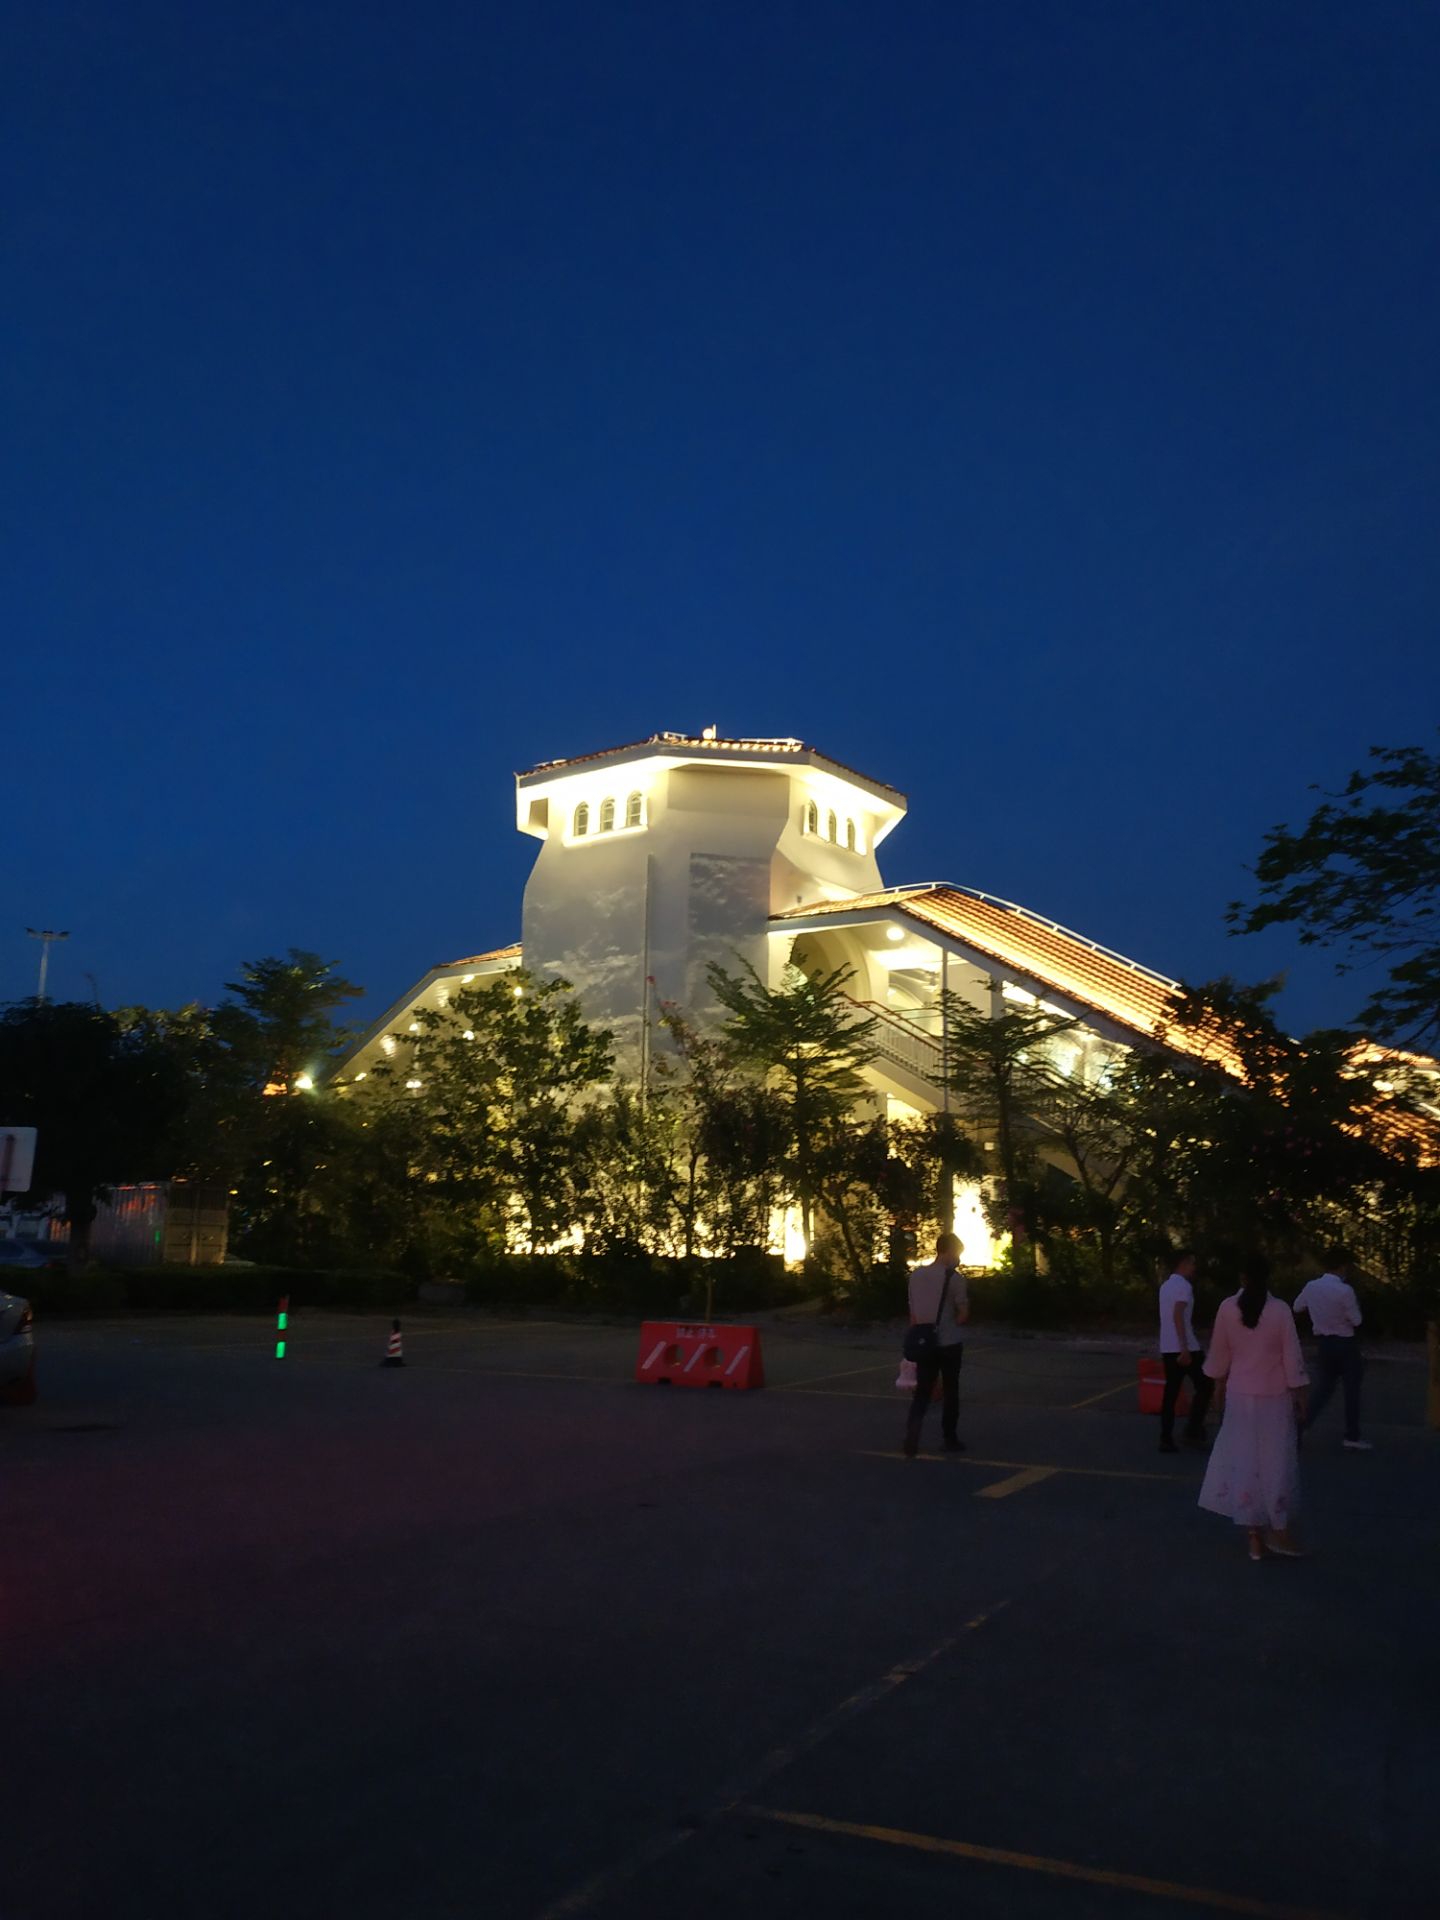 横琴岛夜景图片